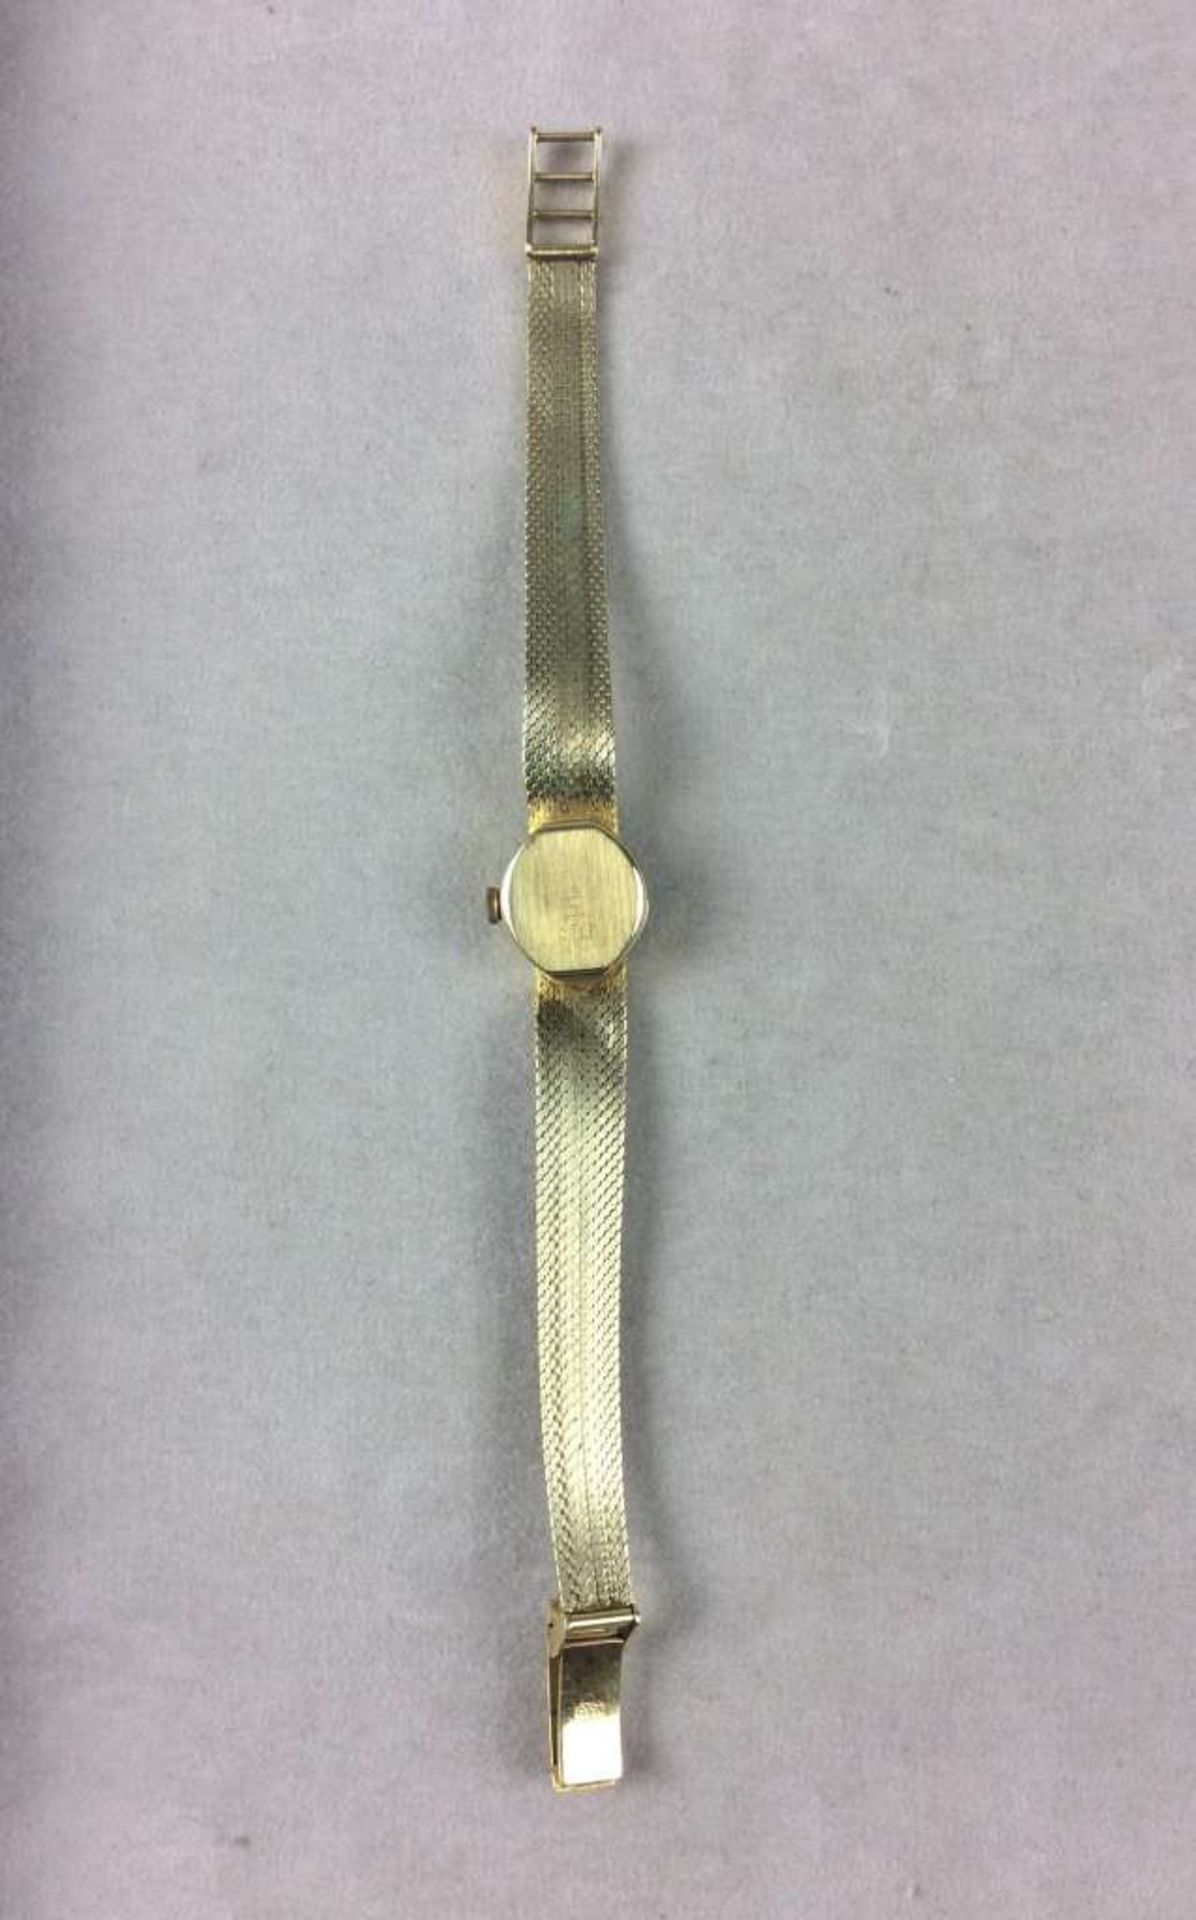 Afra-Damenarmbanduhr aus 585er-Gelbgold, rundes Ziffernblatt, mechanisches Uhrwerk/Handaufzug. - Bild 3 aus 3